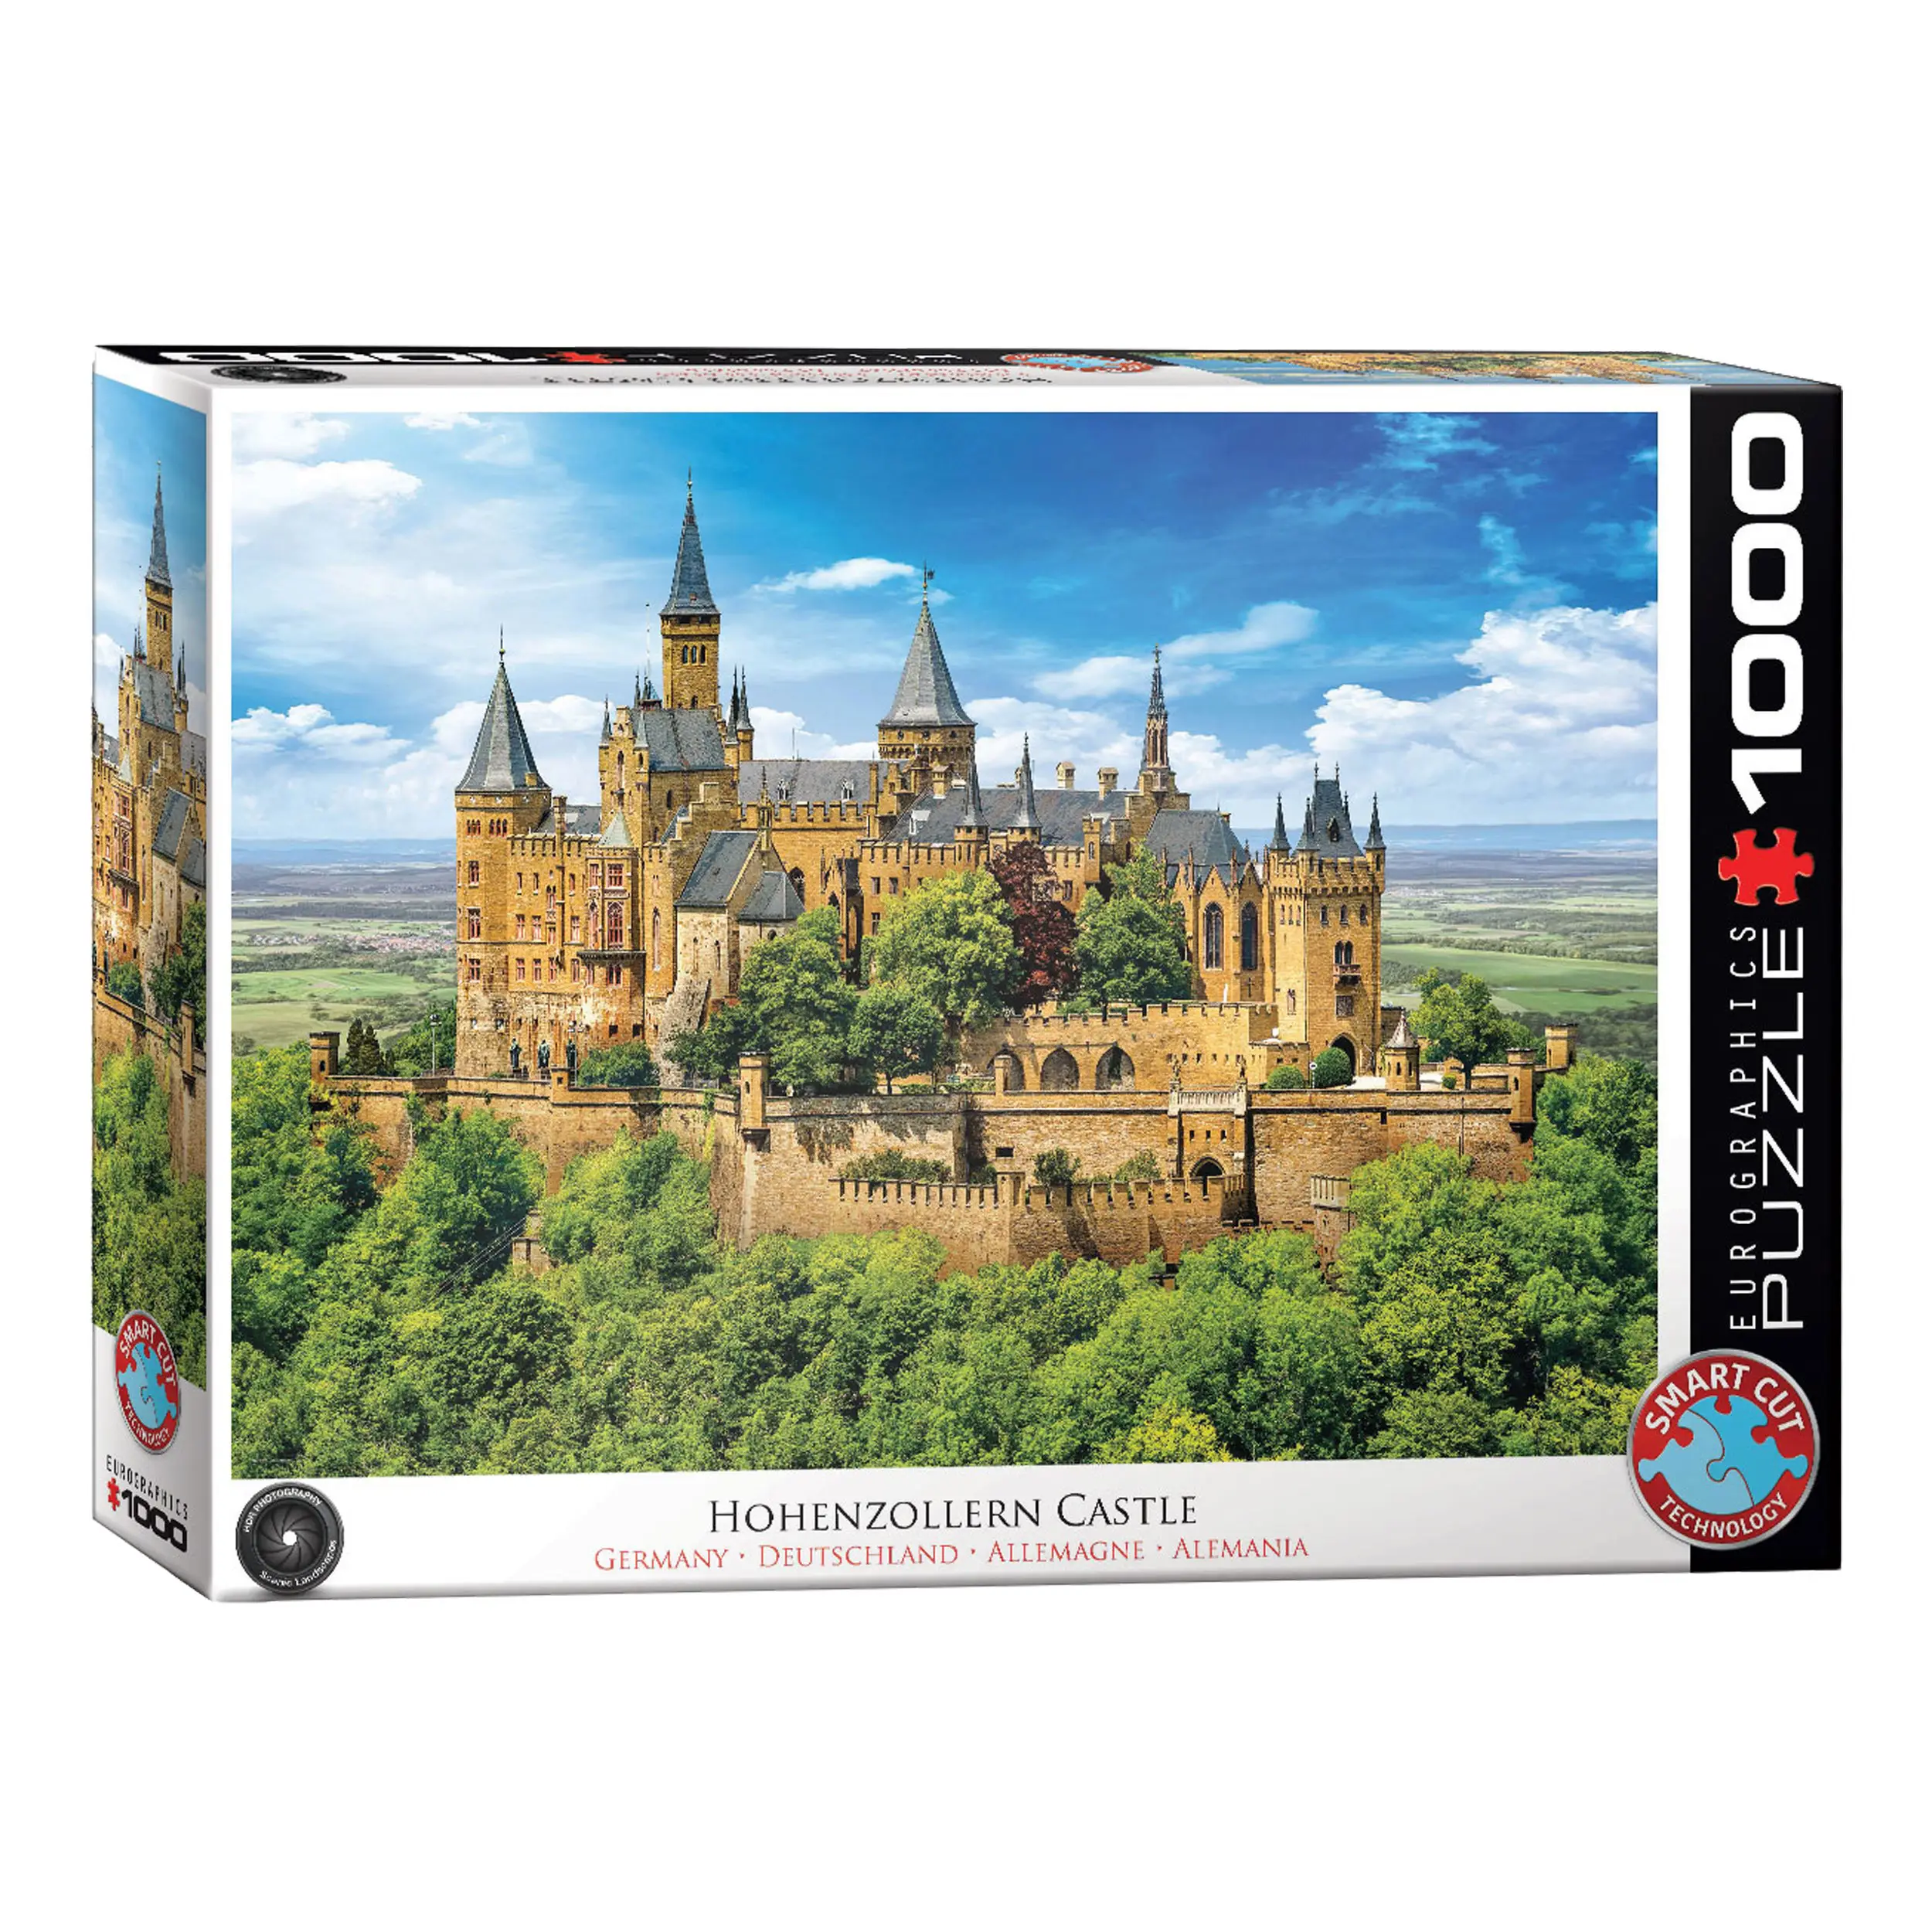 Hohenzollern Burg Puzzle